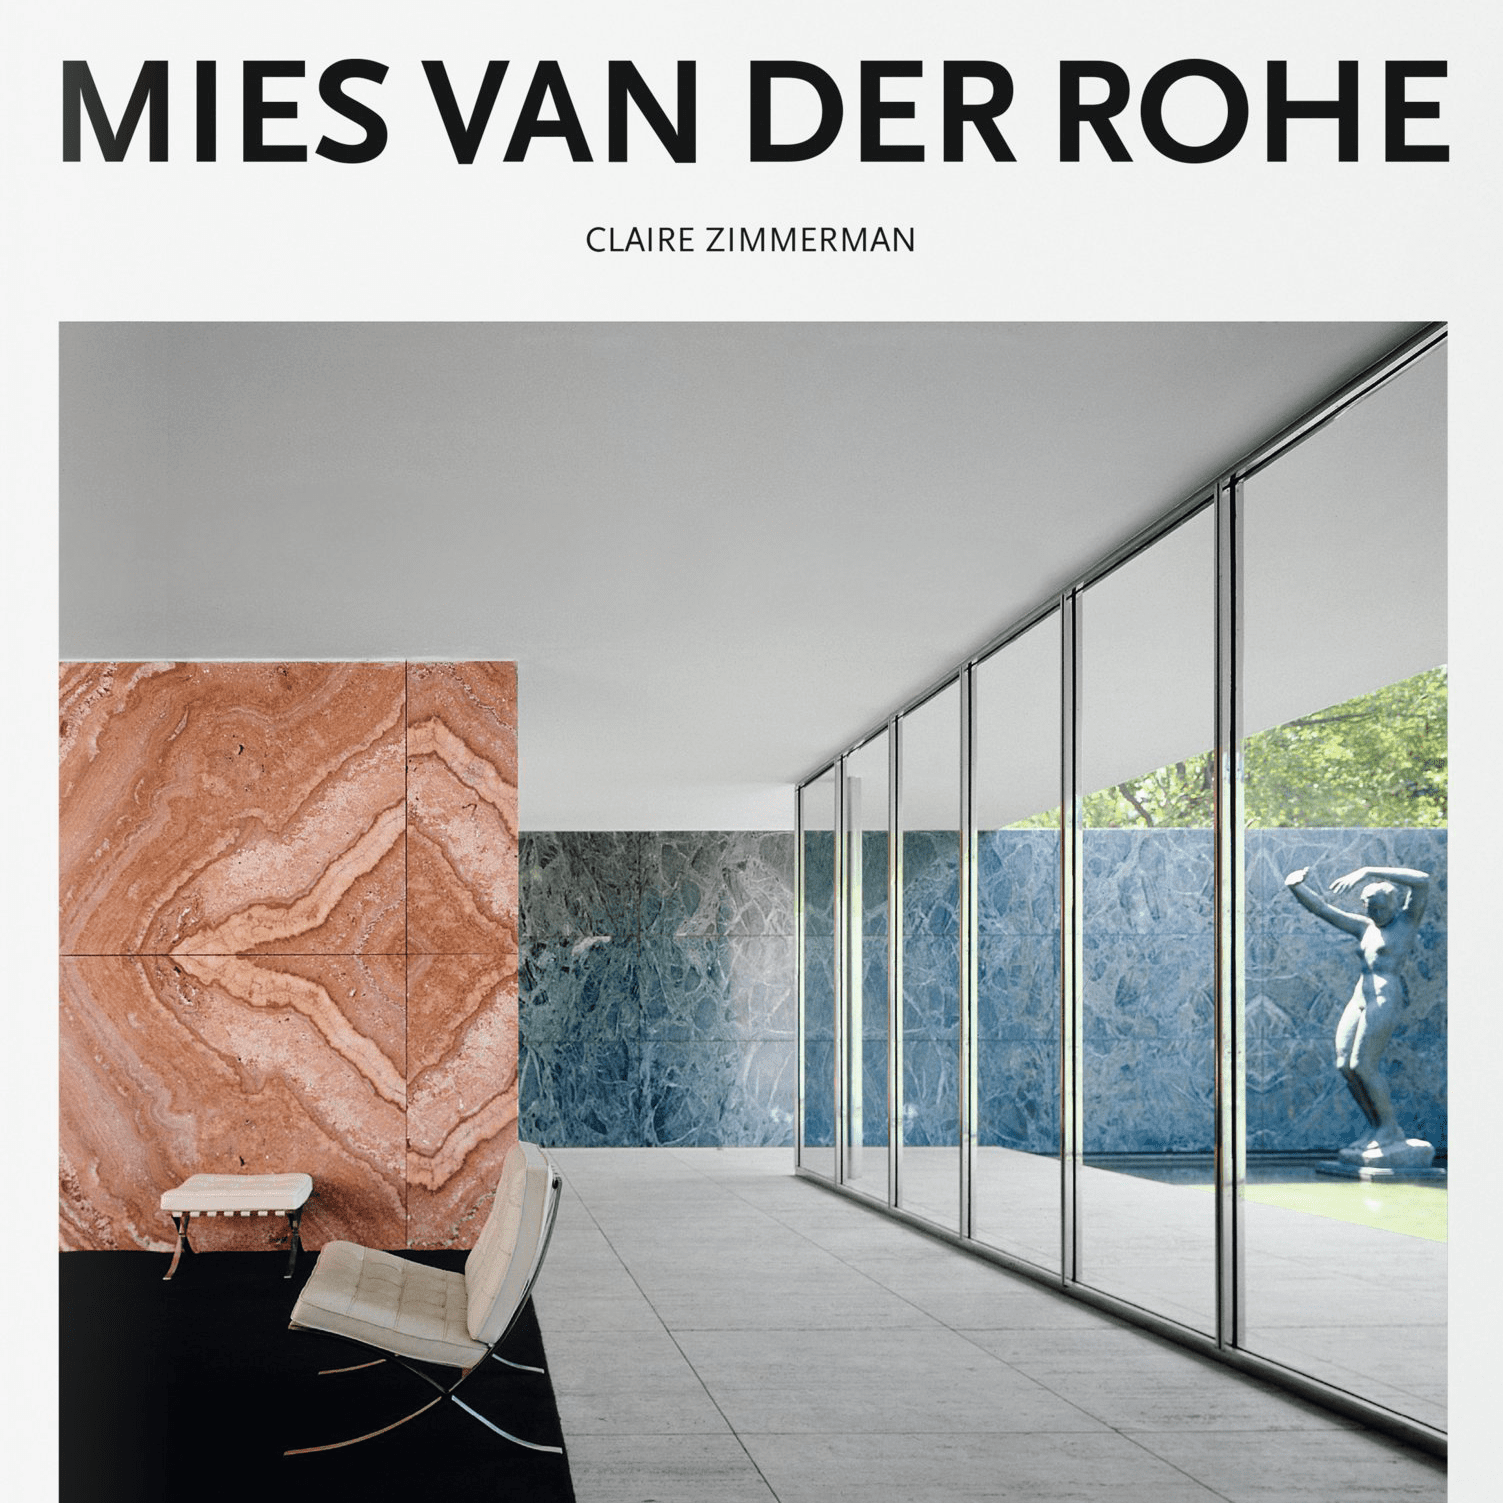 εικόνα του Mies van der Rohe's projects from 1906 to 1967